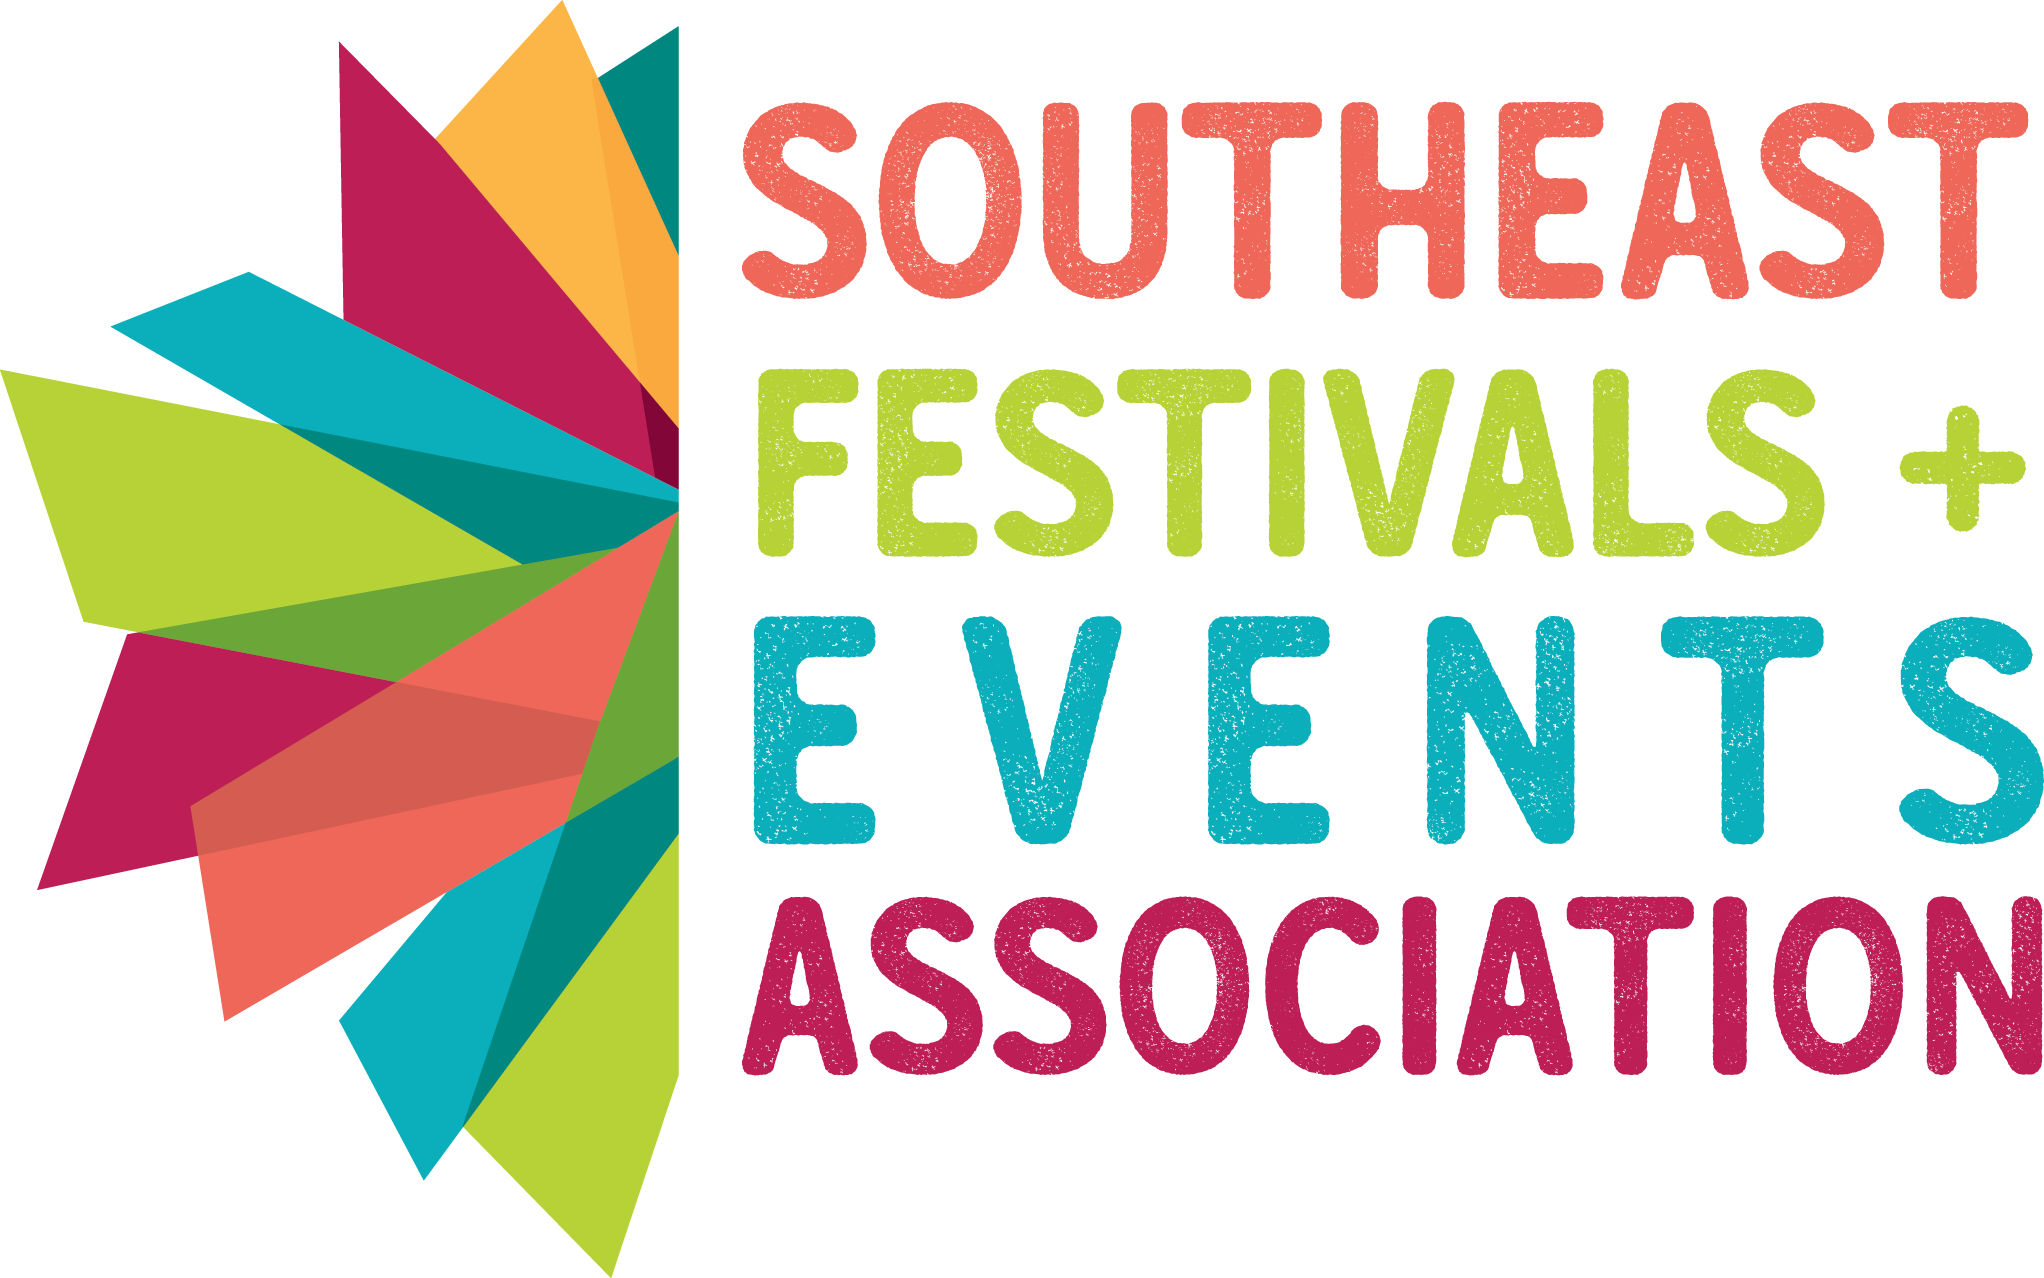 Southeast Festivals & Events Association